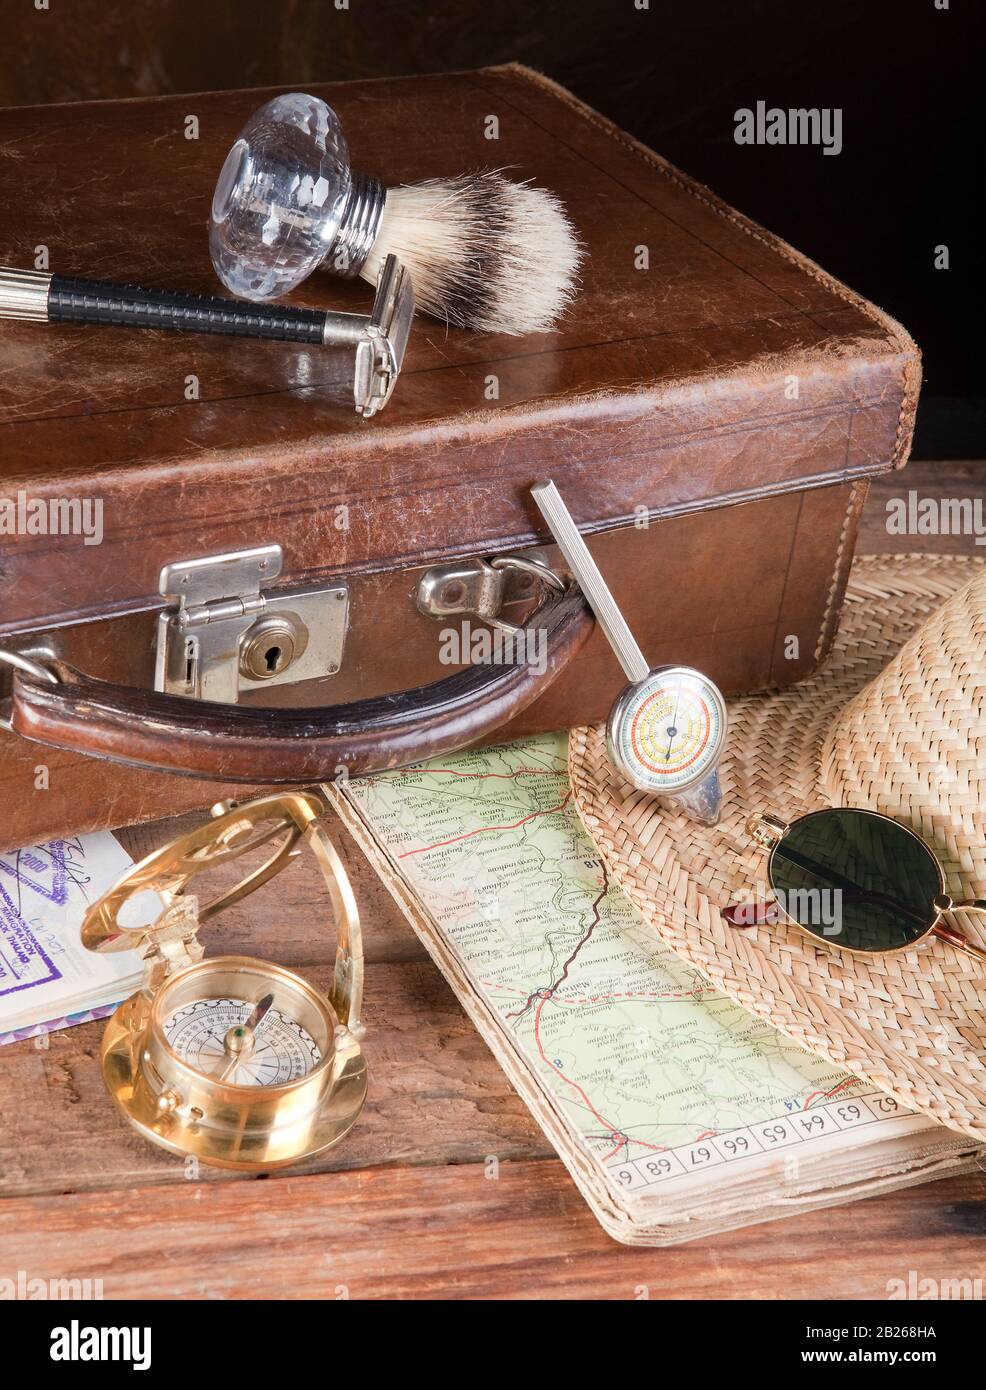 Vintage-Koffer, Karten, Kompass und alter Entfernungsmesser Stockfotografie  - Alamy